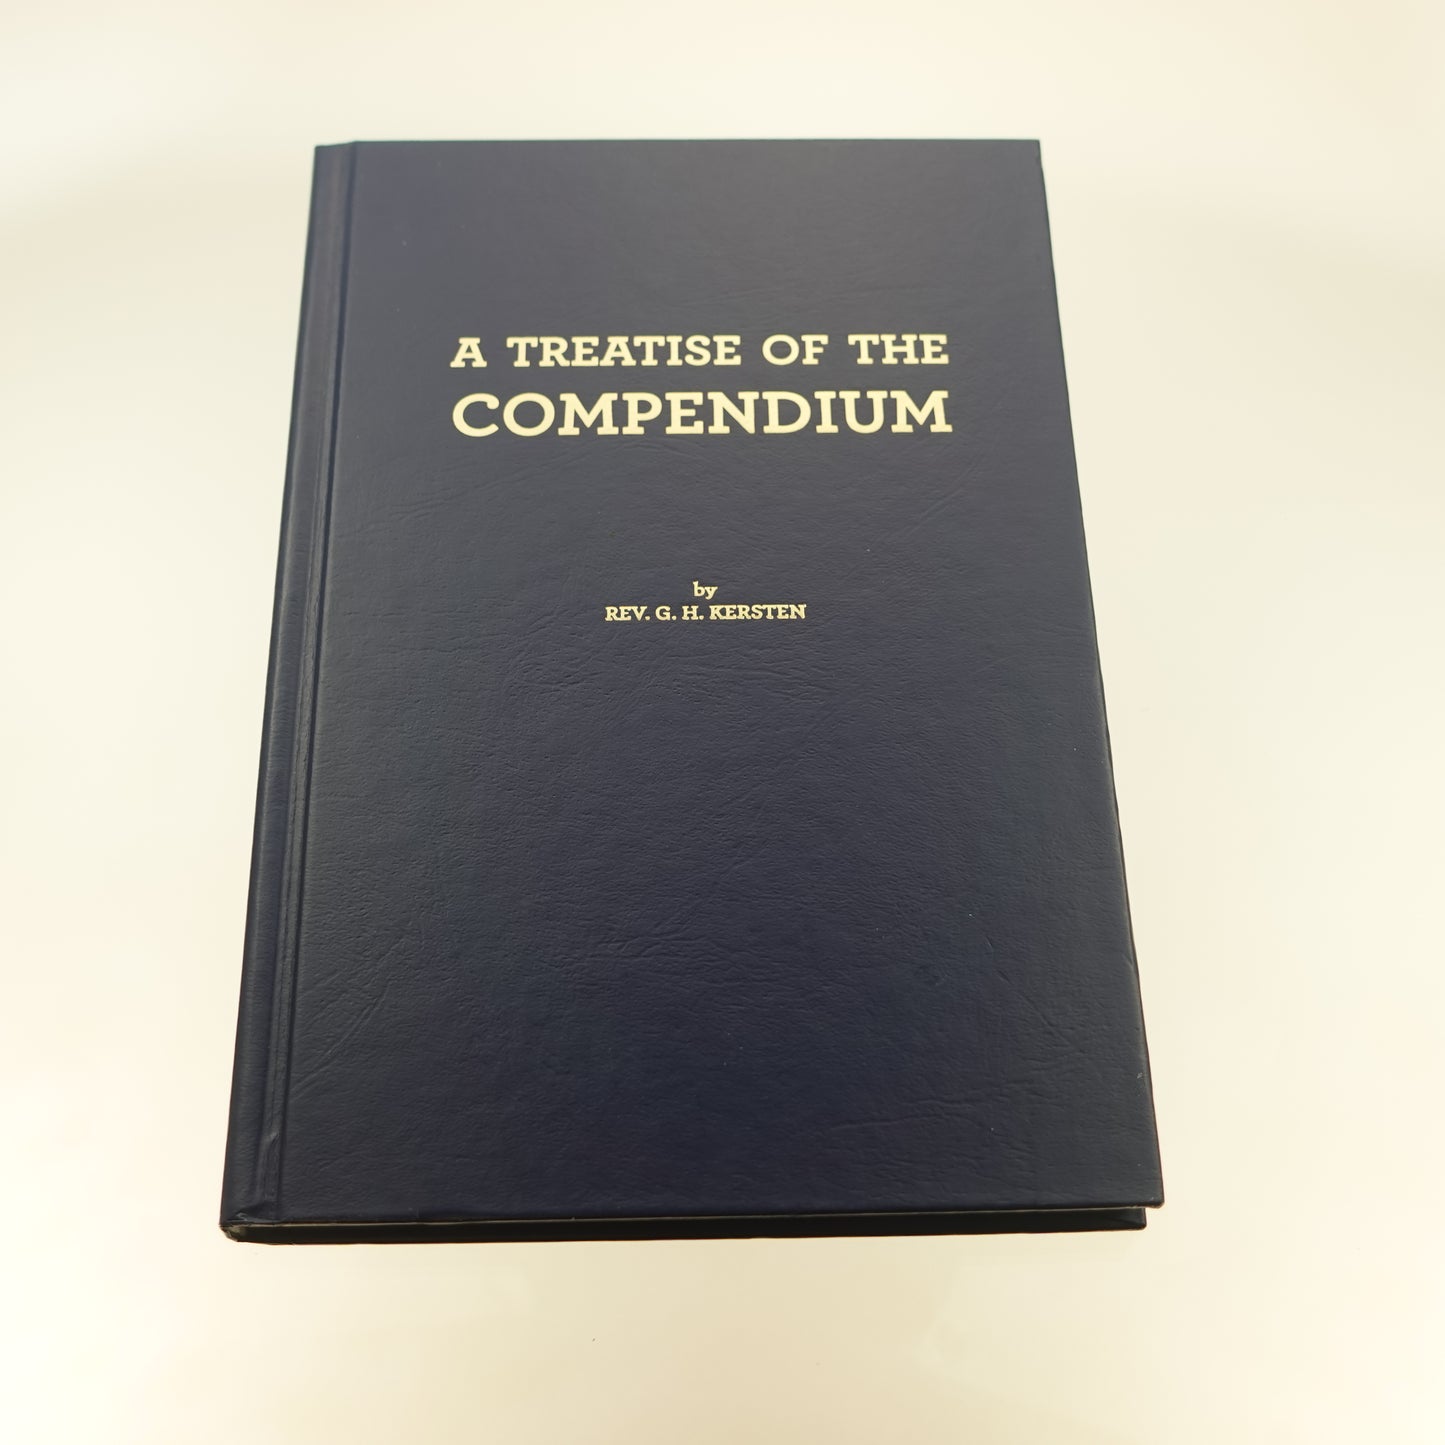 Treatise of the Compendium